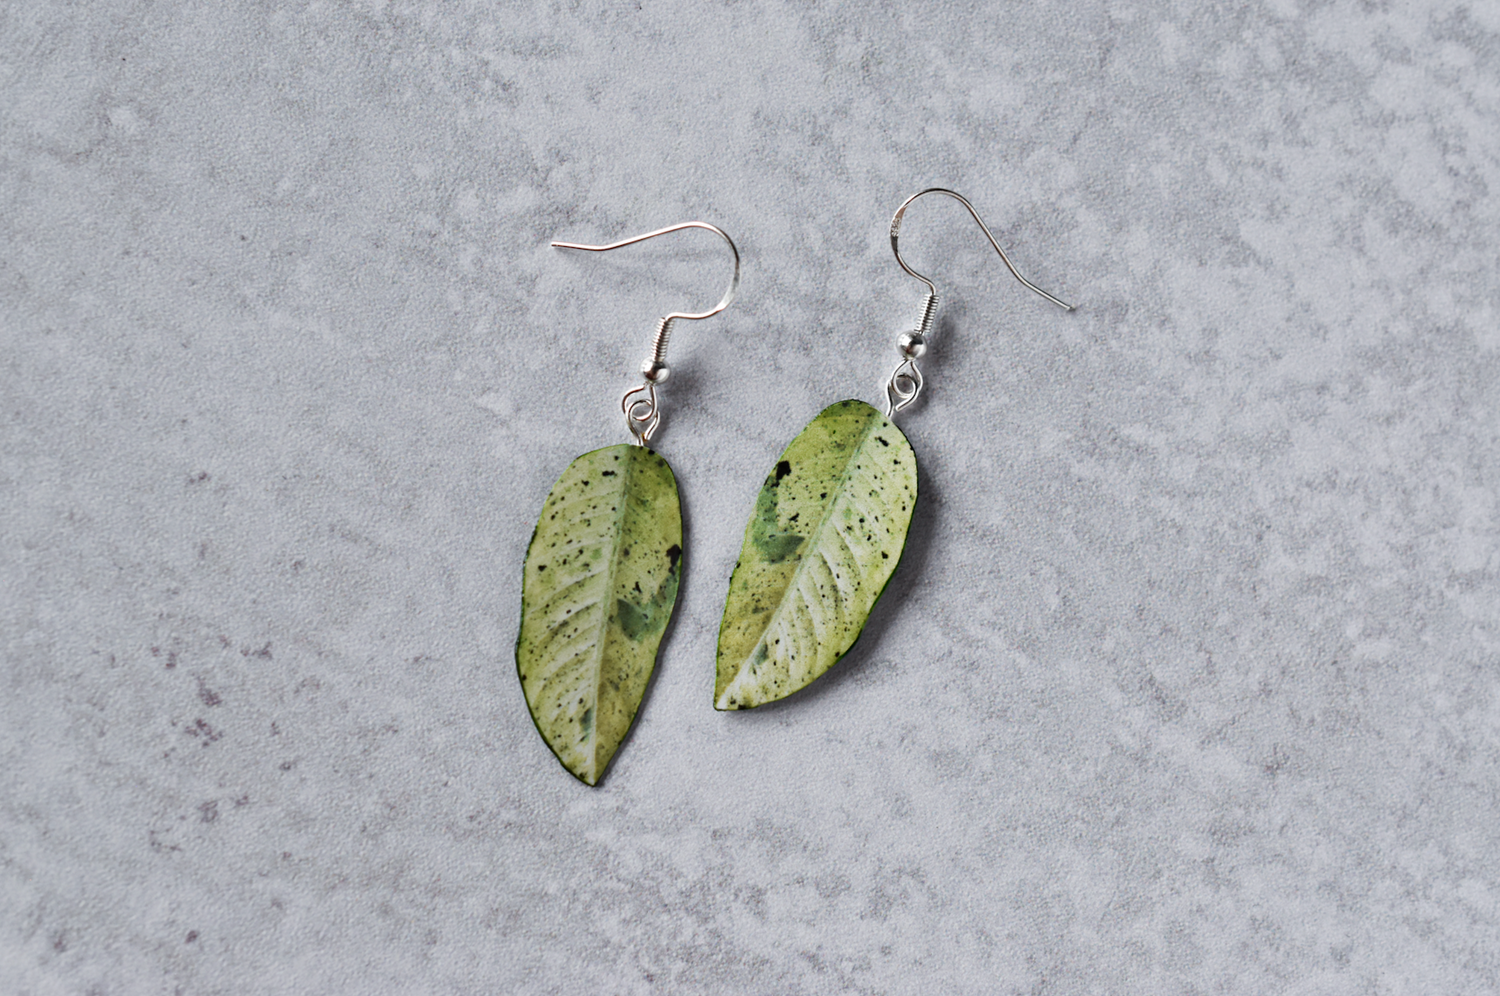 Dieffenbachia "Camouflage" Plant Earrings | Leaf Earrings